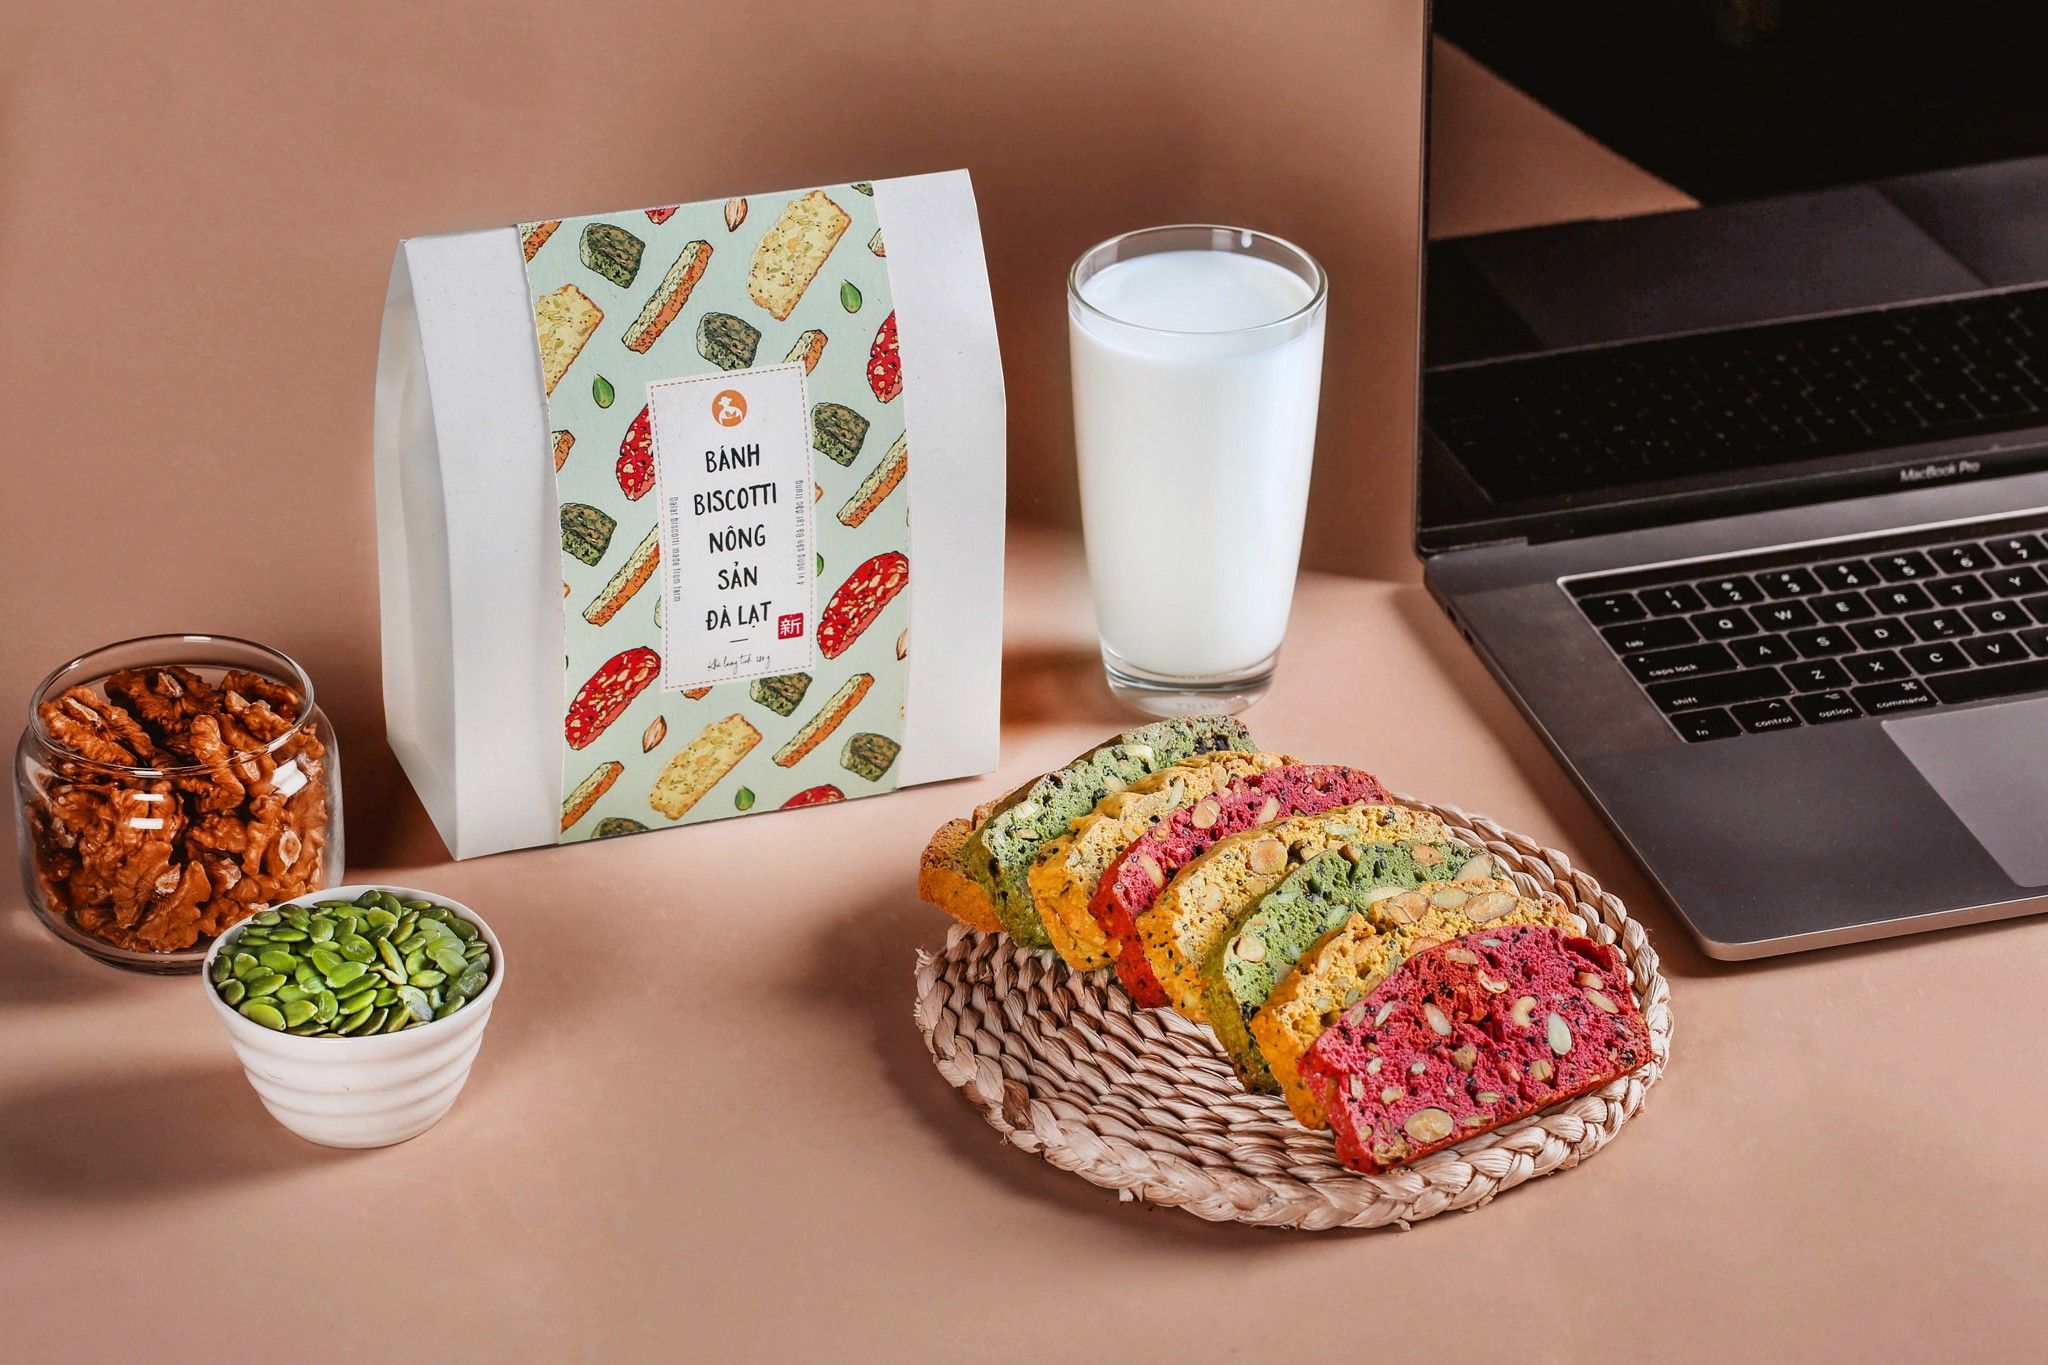 Bánh Biscotti nông sản Đà Lạt bao bì mới mẫu Ichiba 1 bánh thay 1 bữa ăn